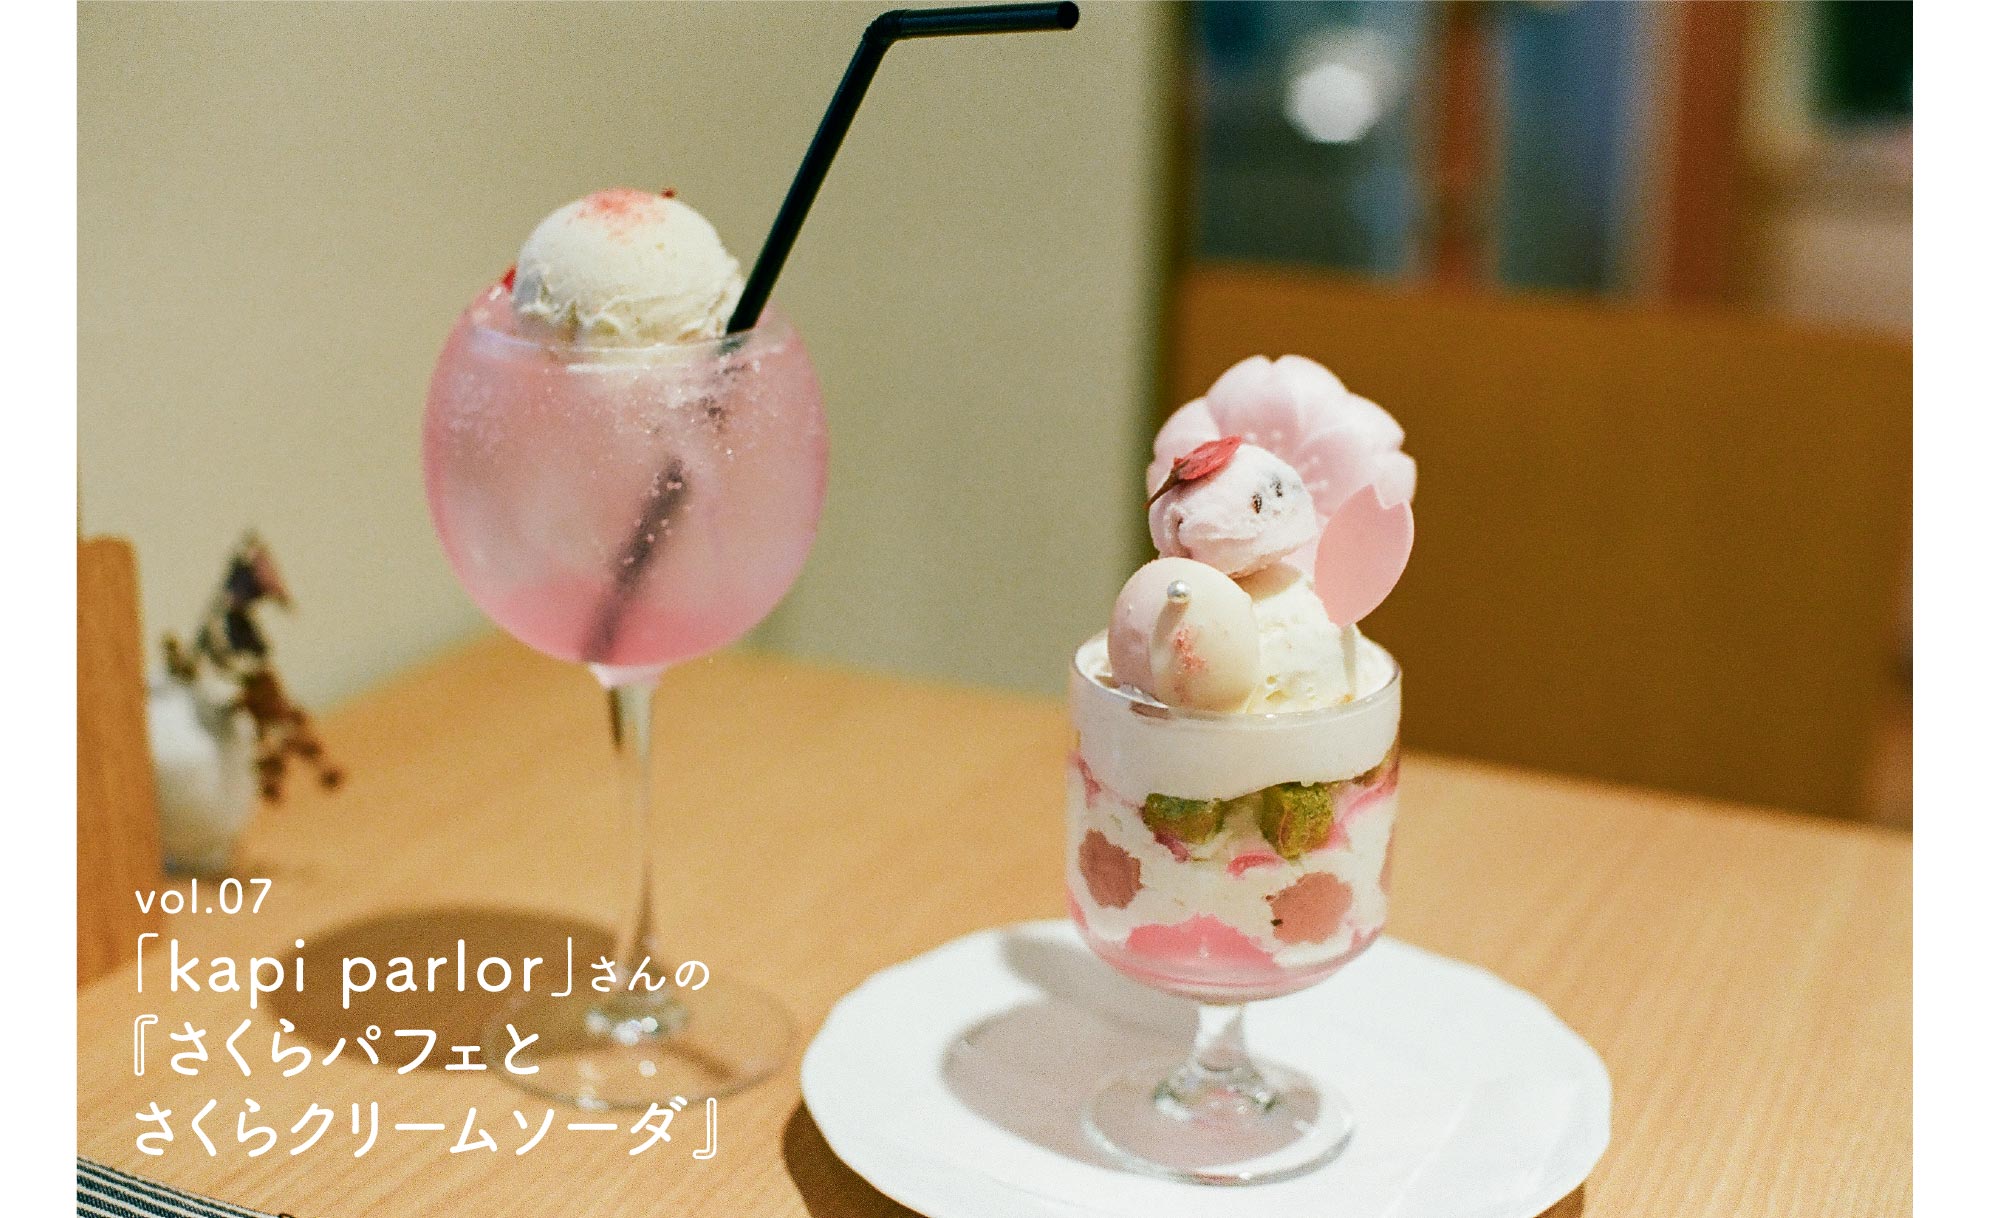 vol.07 「kapi parlor」さんの『さくらパフェとさくらクリームソーダ』